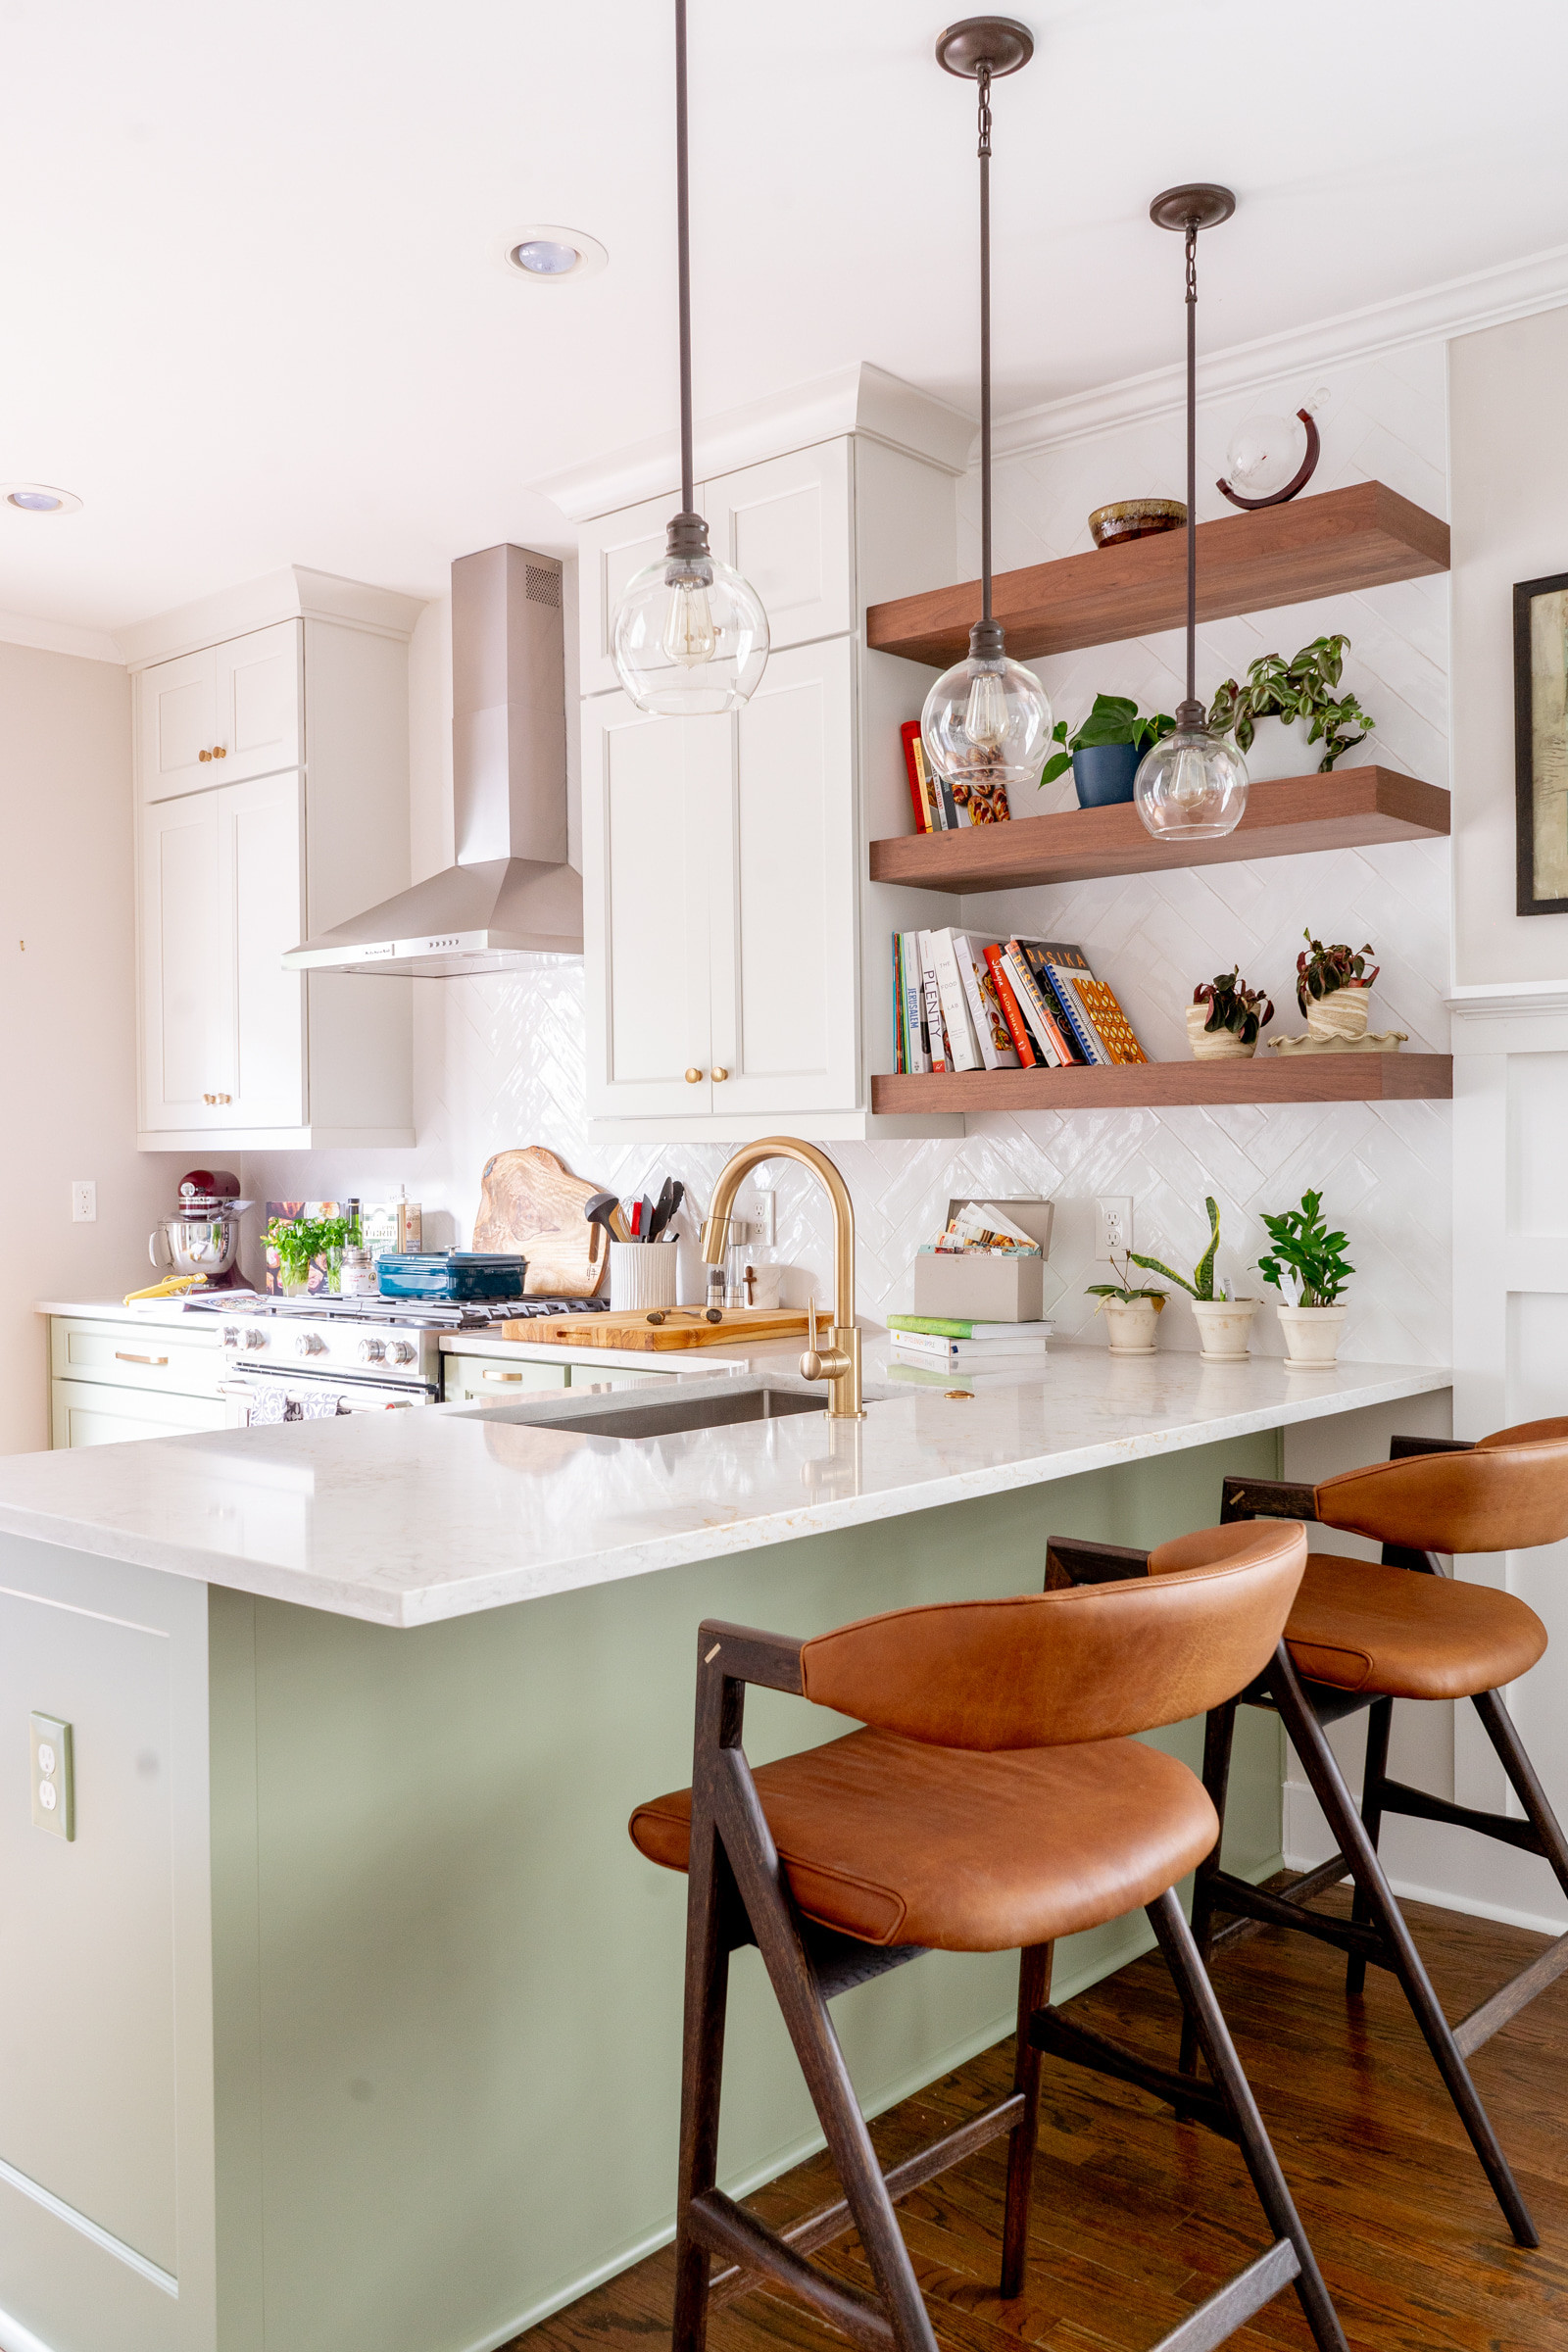 Glenwood Green modern kitchen